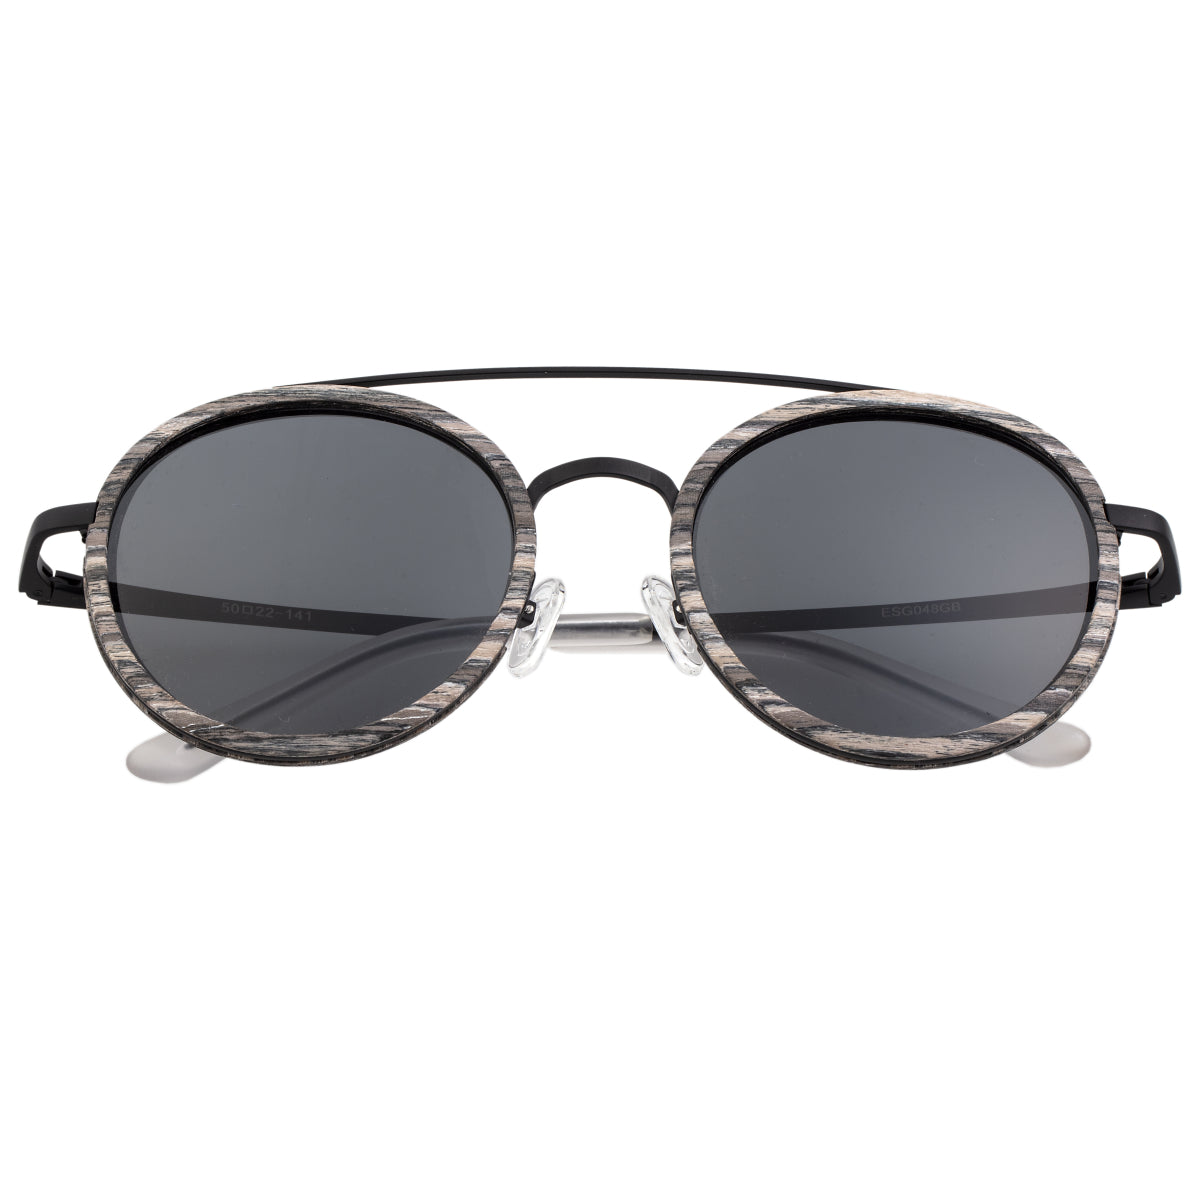 Earth Wood Binz Polarized Sunglasses - Grey Vine/Black  - ESG048GB